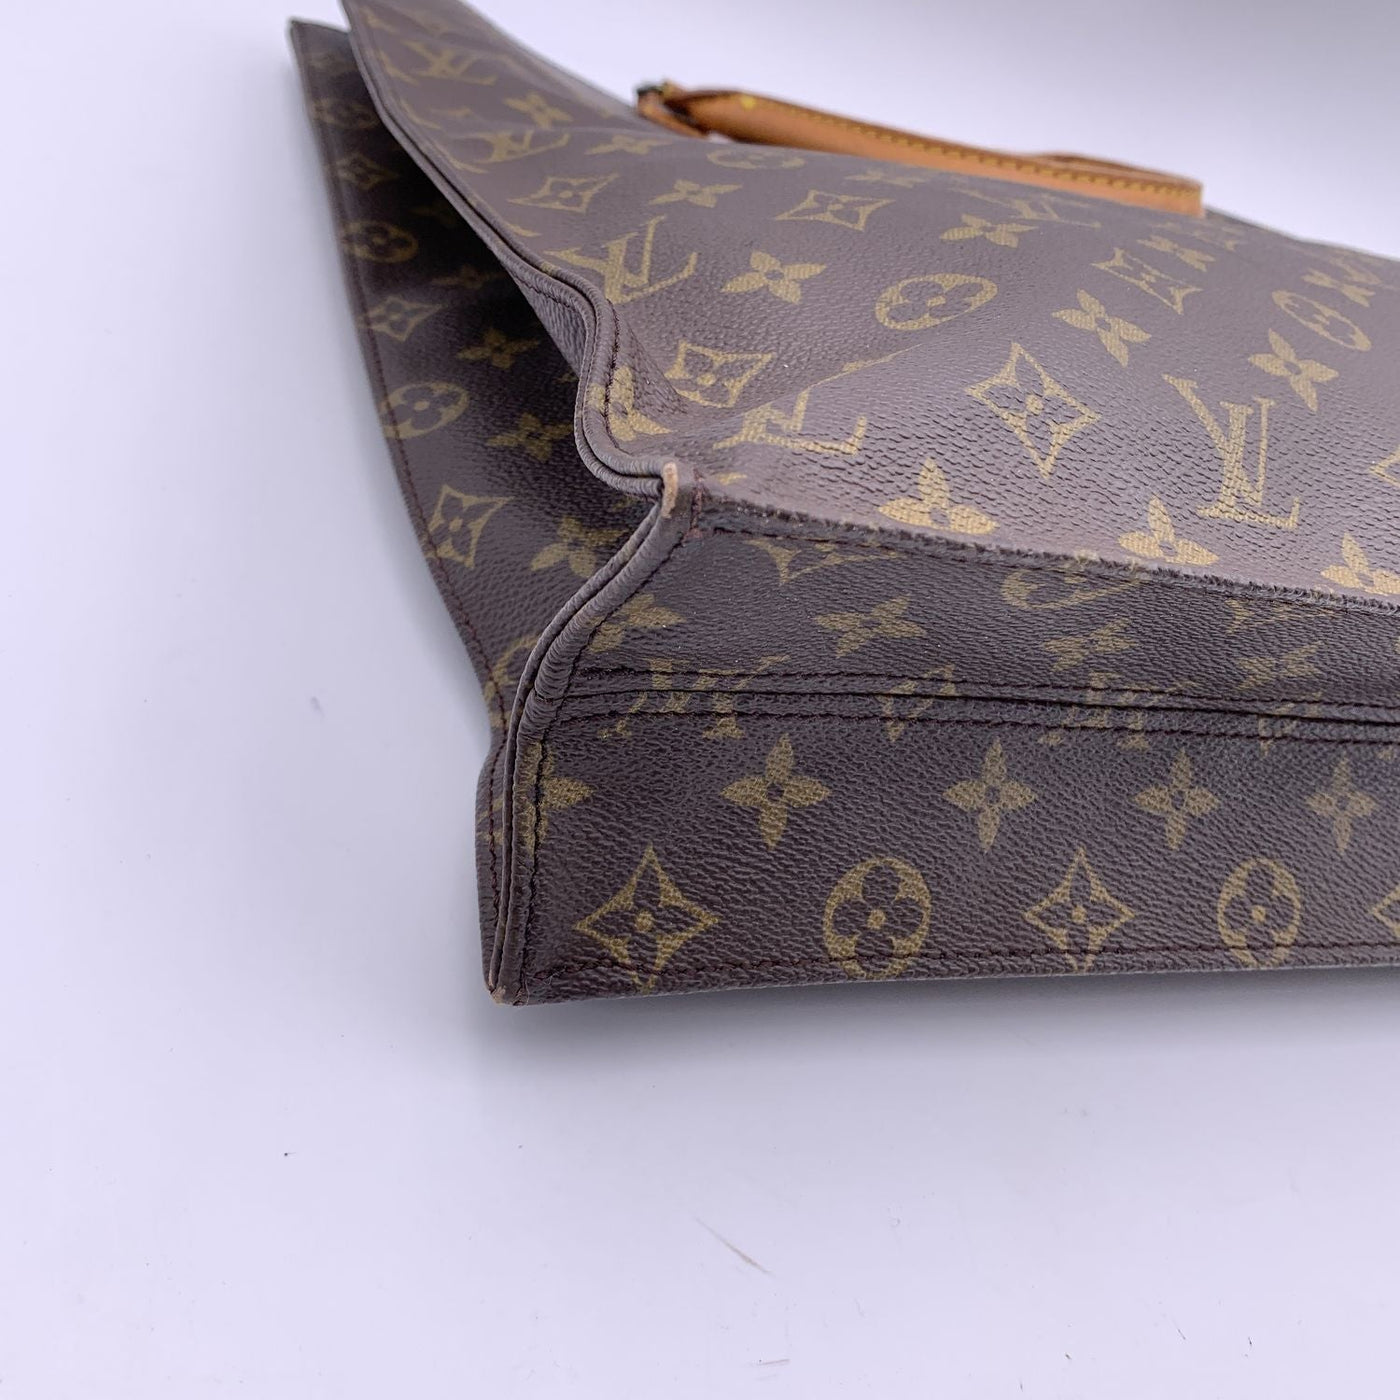 LOUIS VUITTON Vintage Monogram Sac Shopping Bag